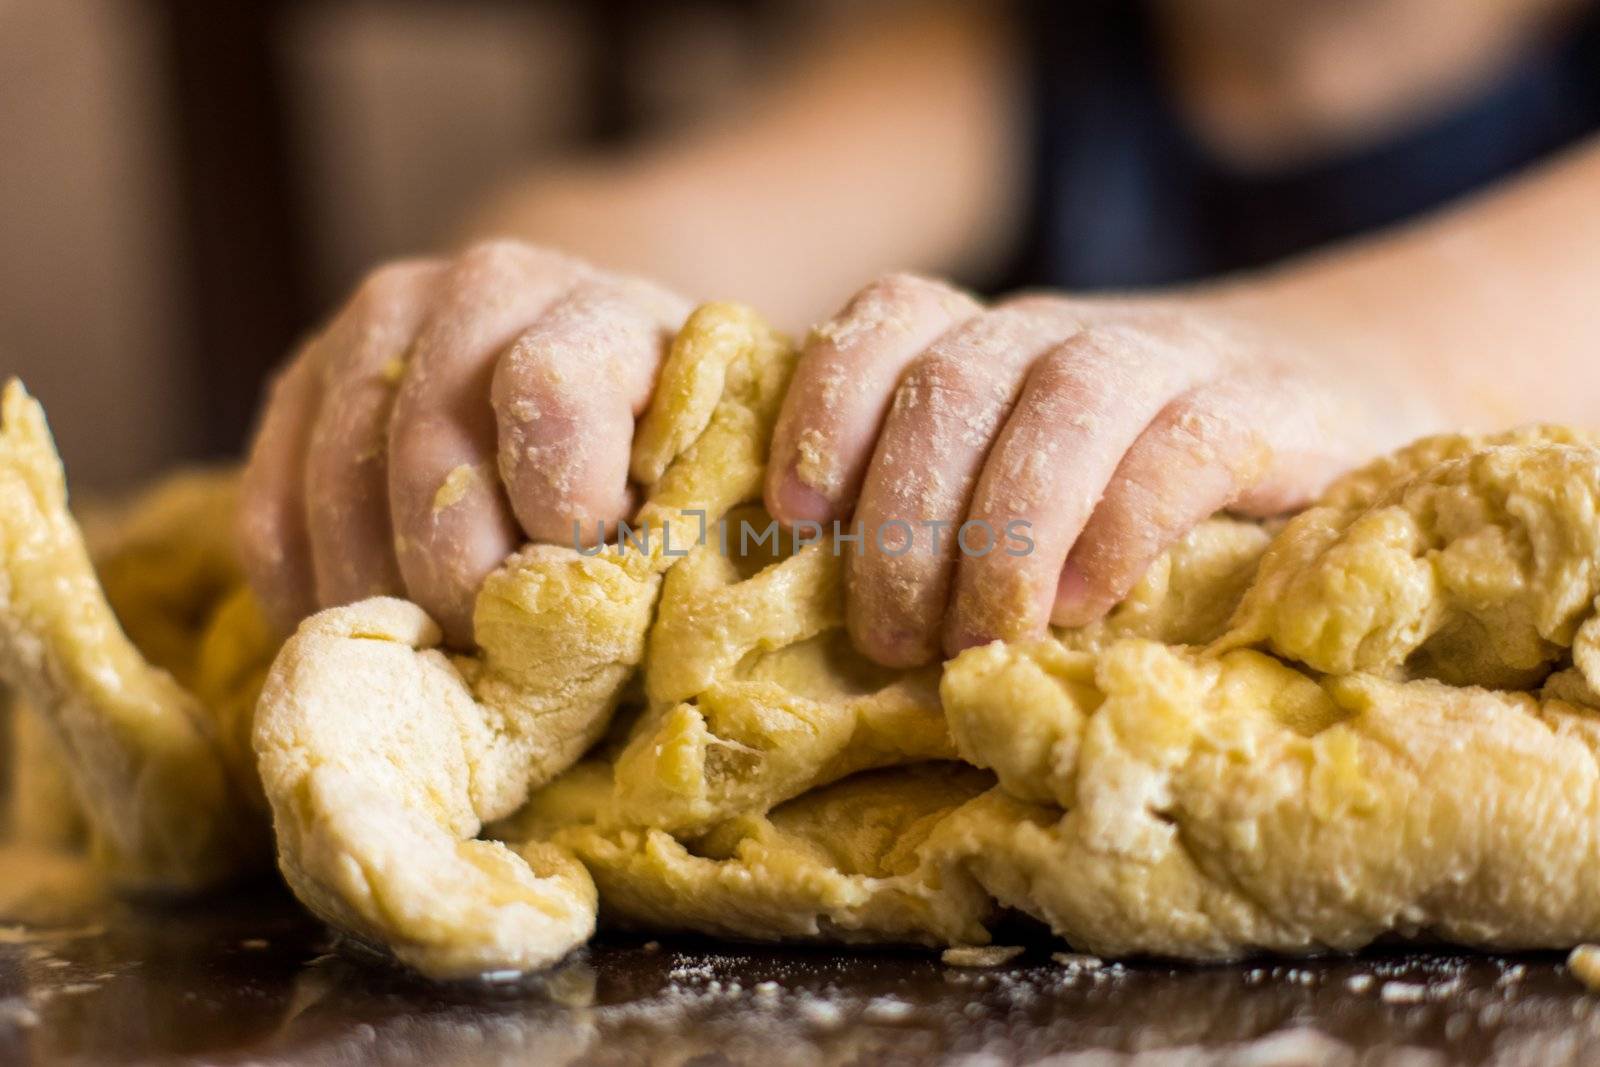 children's hands diligently preparing bread